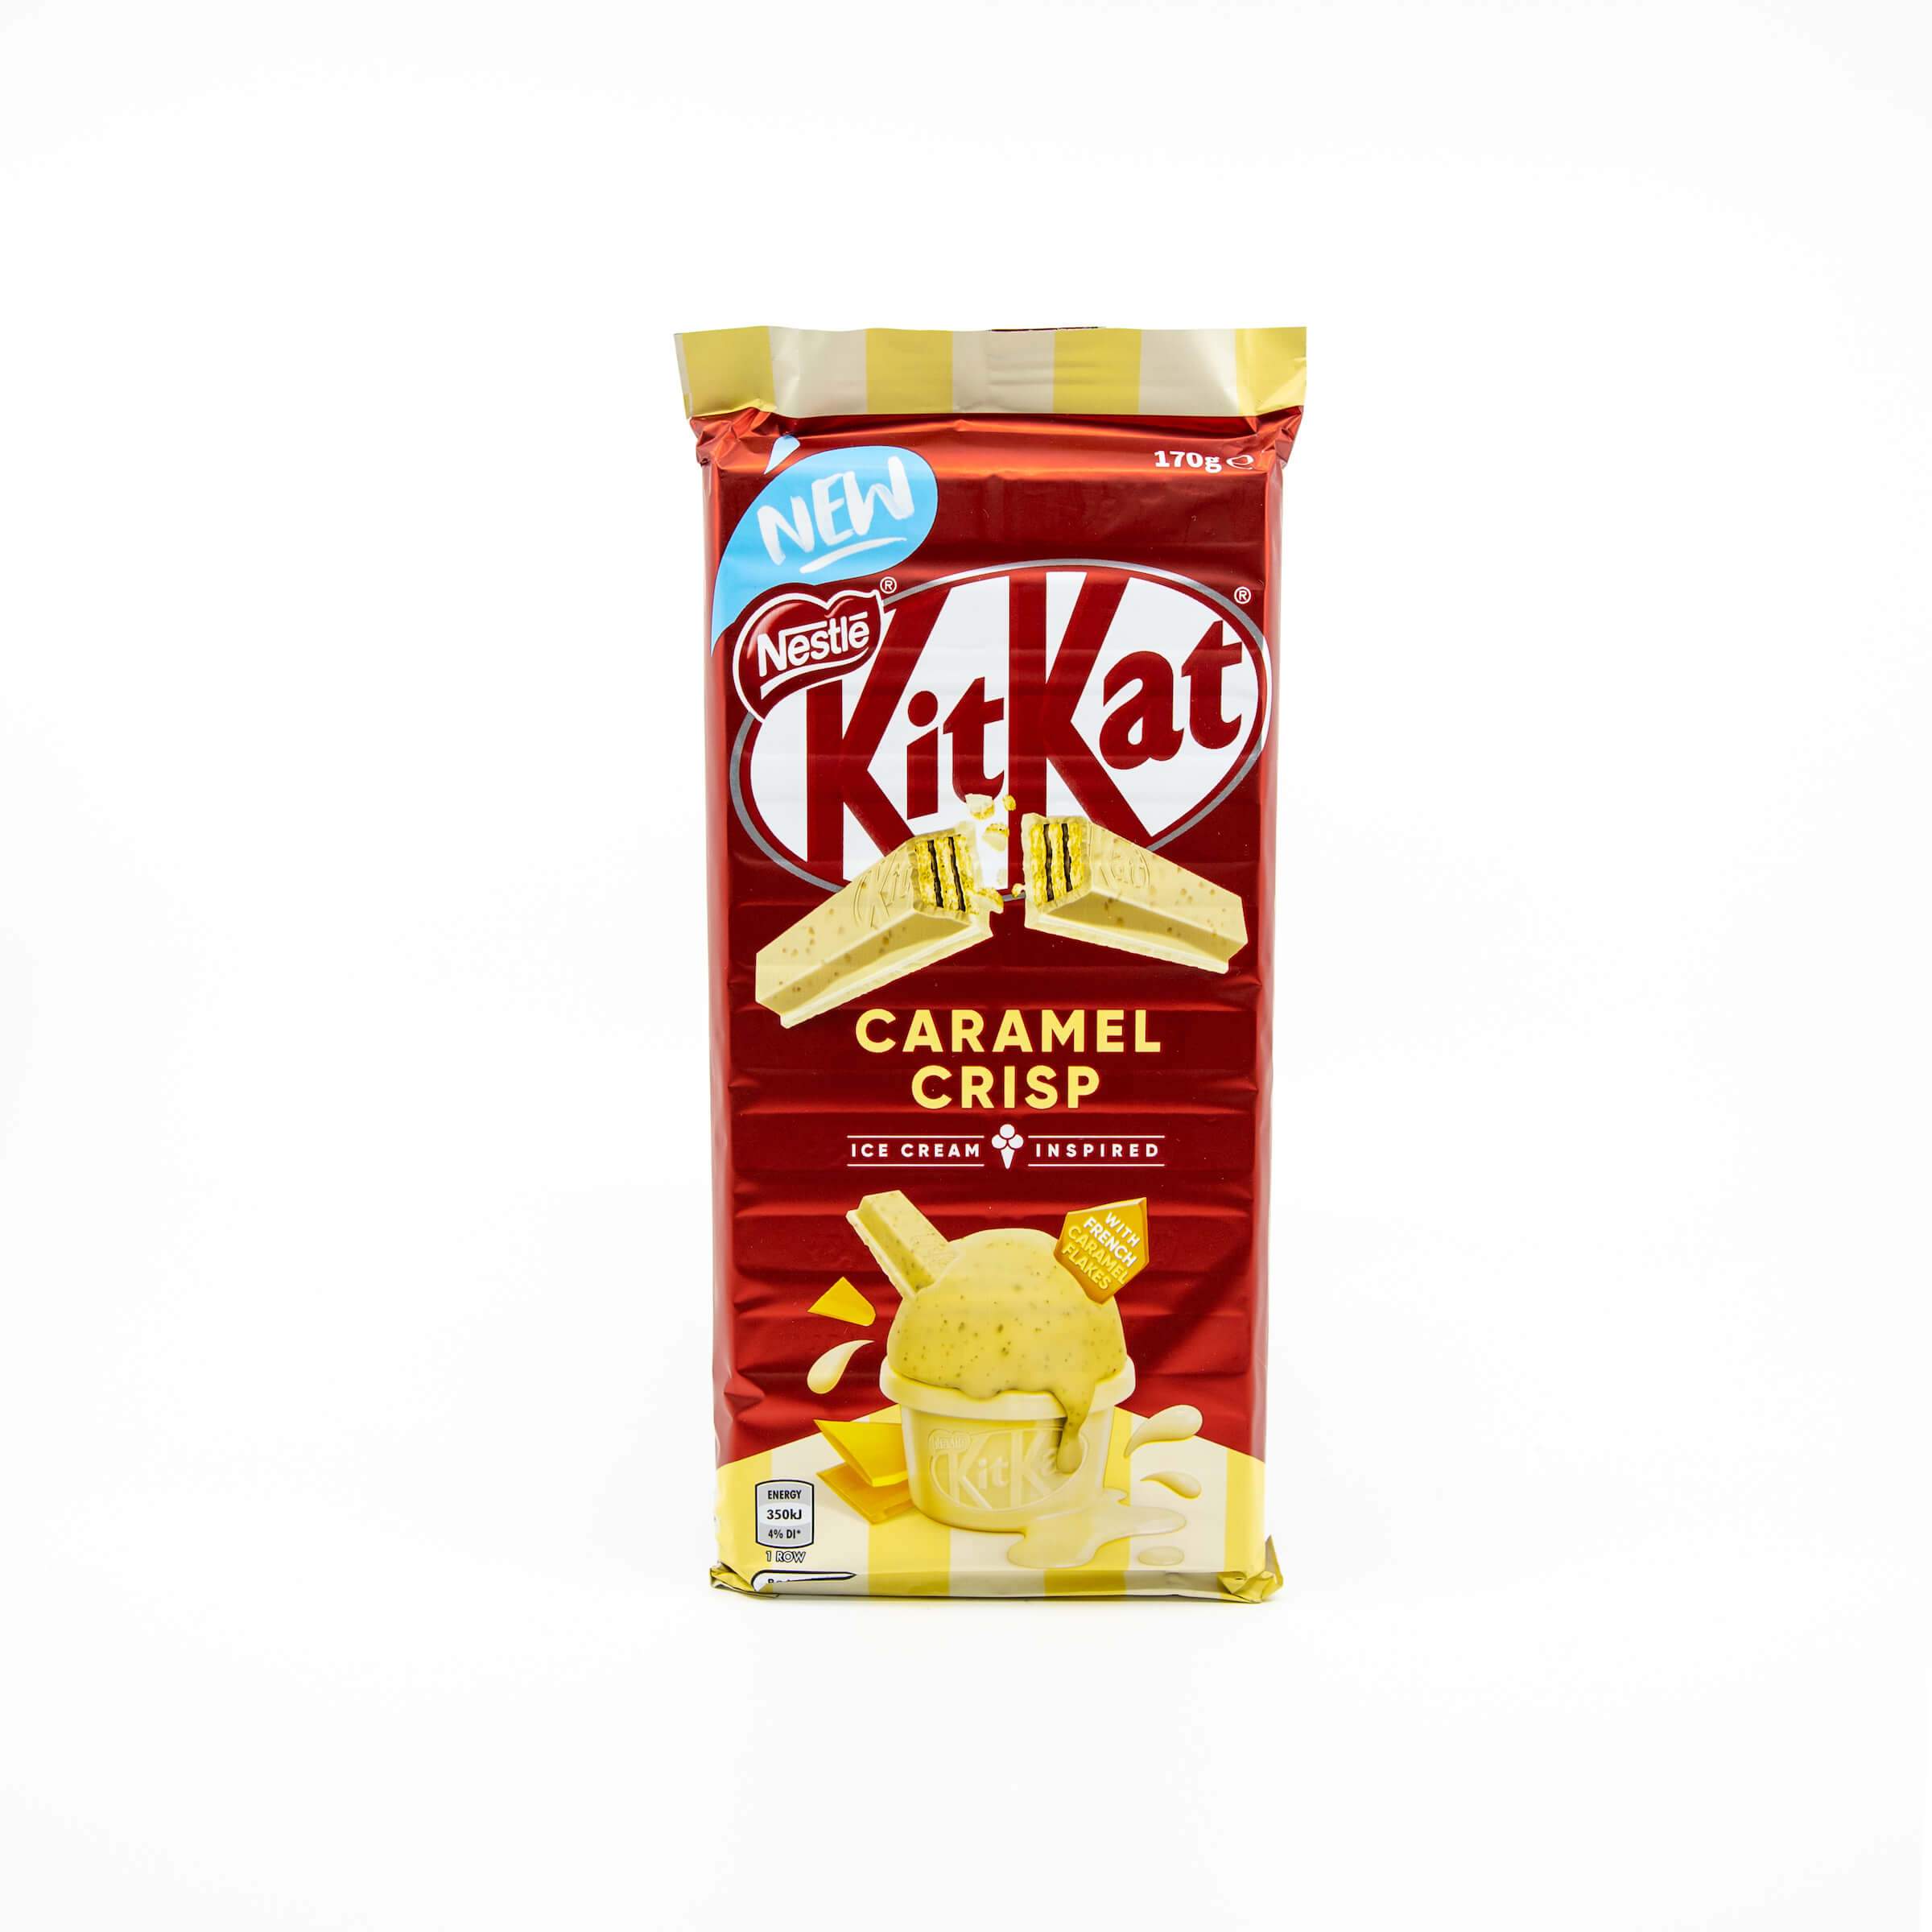 KitKat Caramel Crisp Ice Cream Inspired from Australia